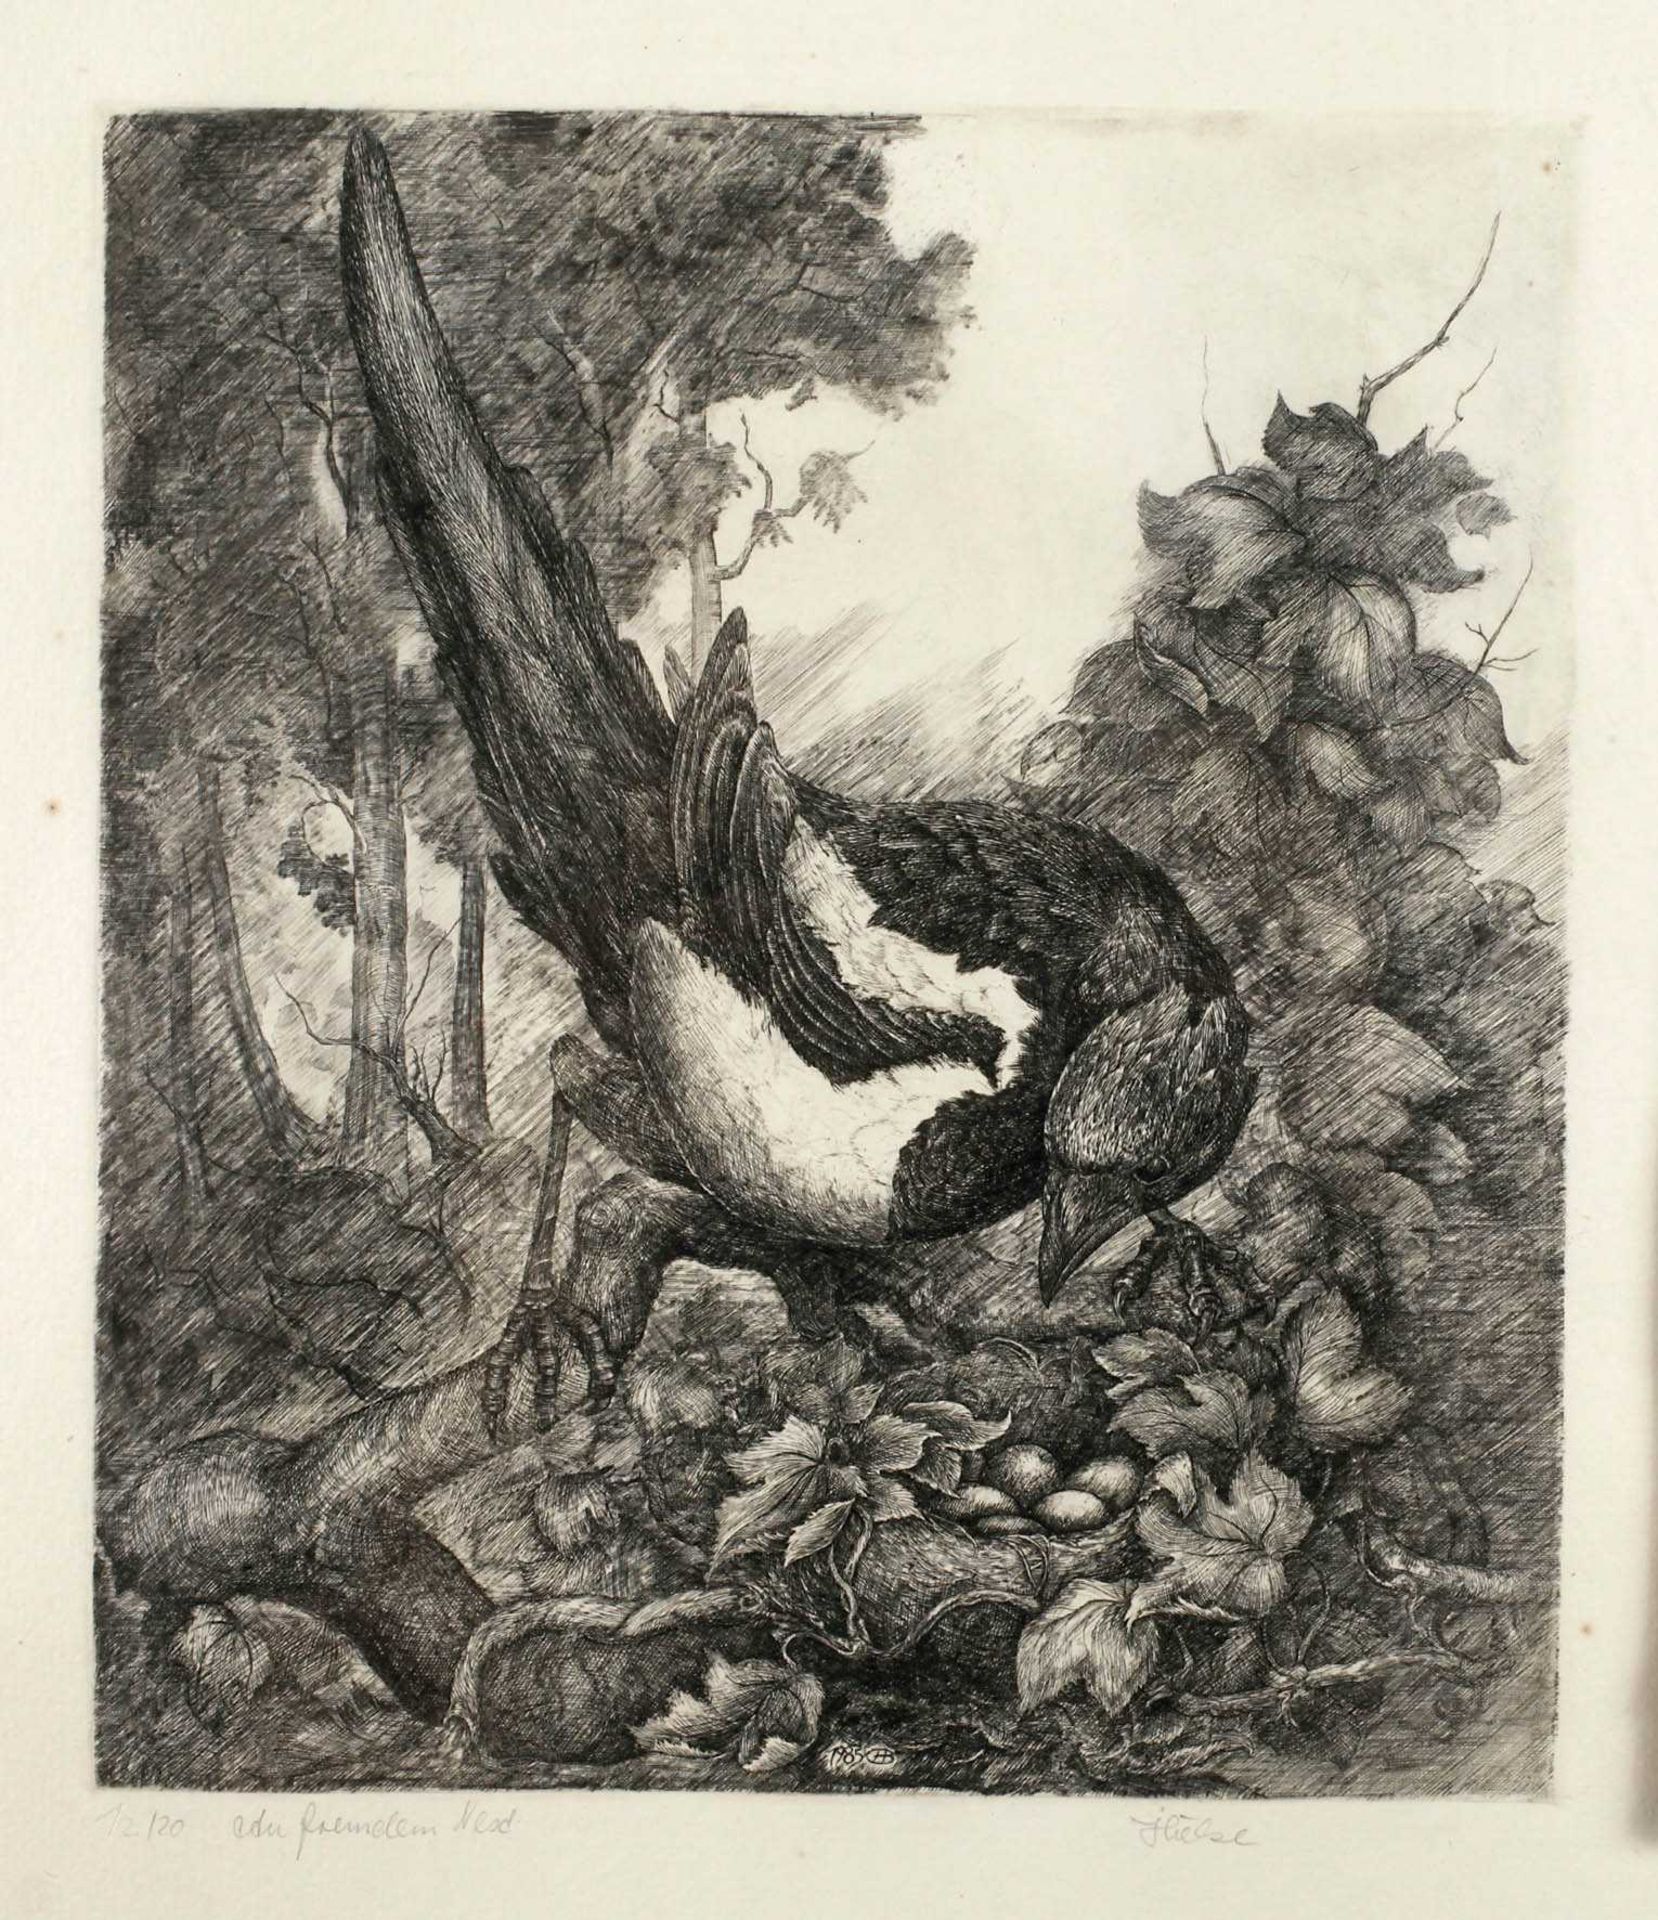 Bernd Hieke, "Am fremden Nest" Elster an einem Nest, umgeben von Blattwerk, Kupferstich, unter der